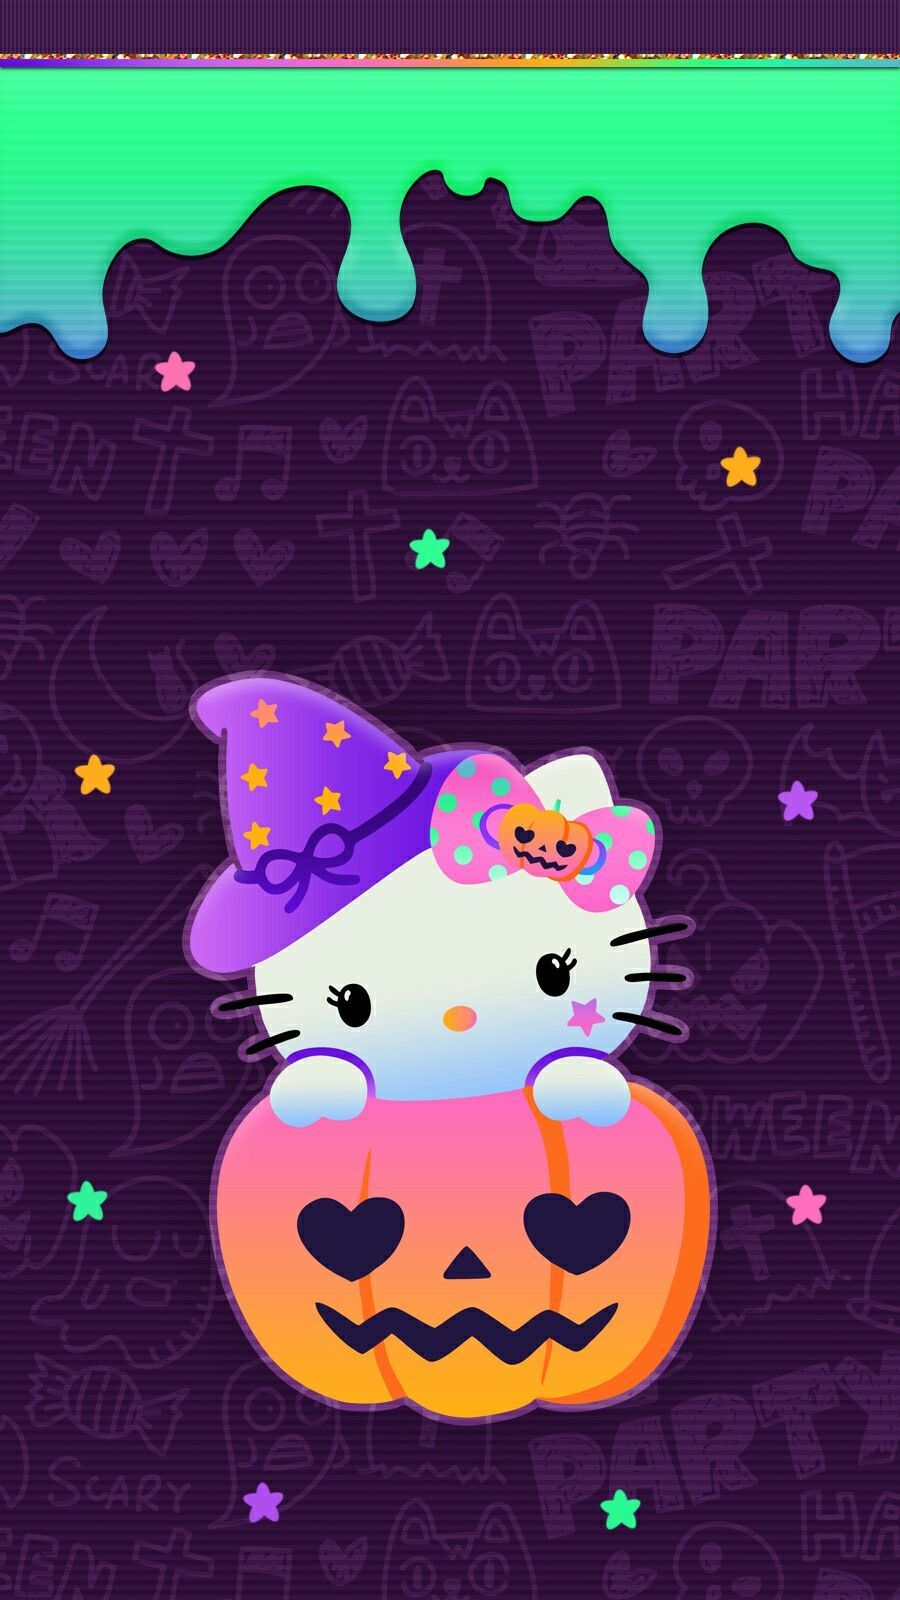 hello_kitty #halloween #wallpaper #iphone #halloweenbackgroundwallpa. Hello kitty wallpaper, Hello kitty halloween wallpaper, Hello kitty iphone wallpaper